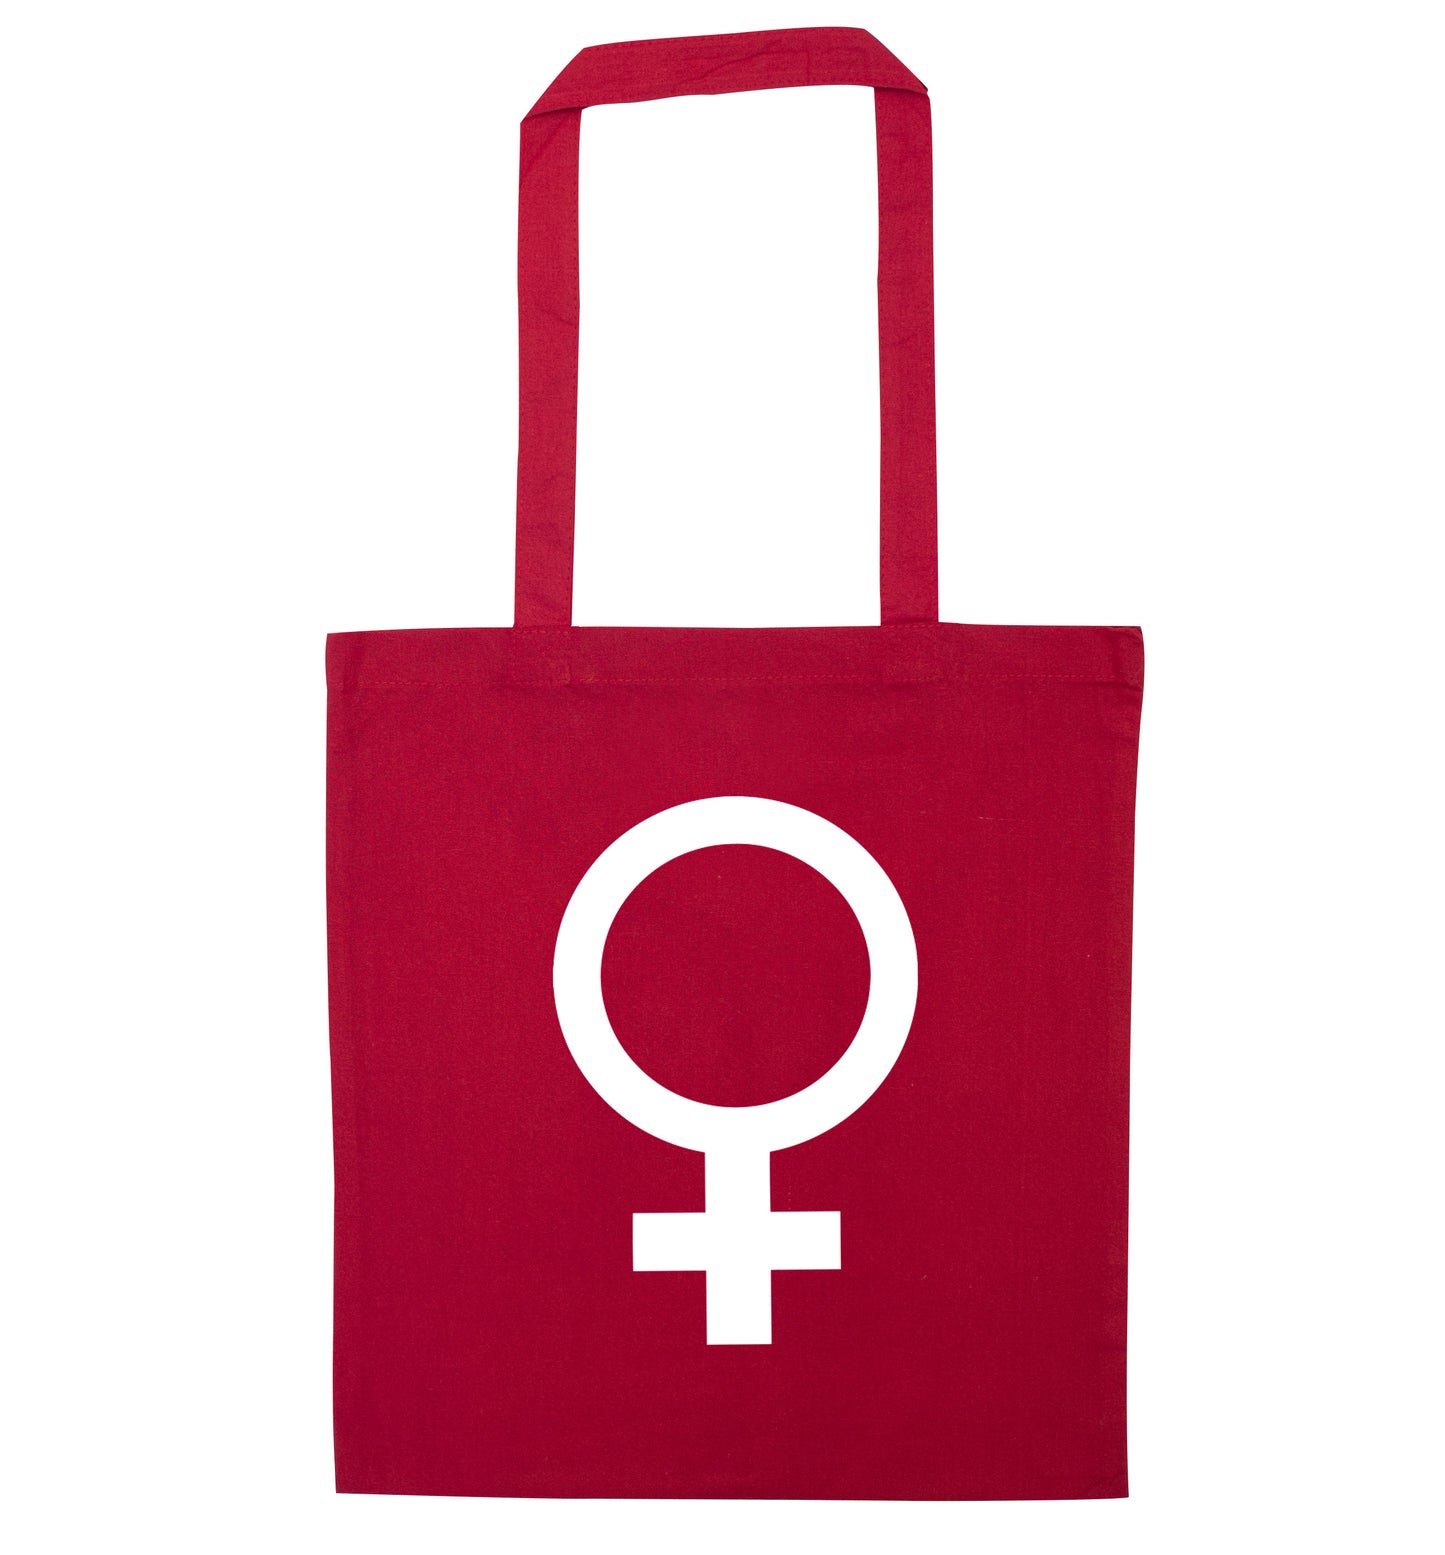 Female symbol large red tote bag